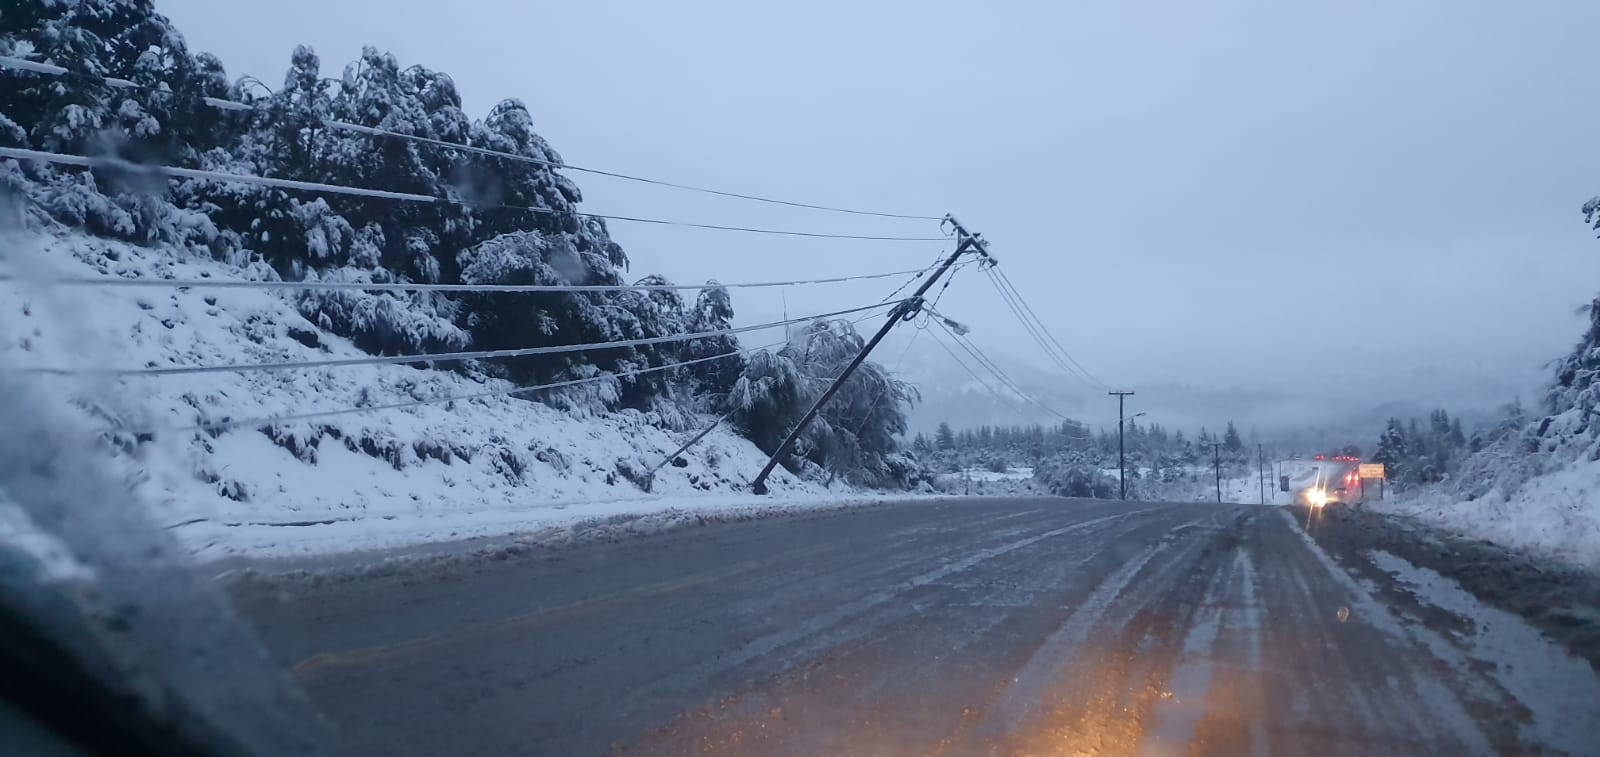 El tendido eléctrico en un sector de la ruta provincial 82 se desplomó por el temporal de nieve esta tarde de martes, en la zona oeste de Bariloche. (foto gentileza)